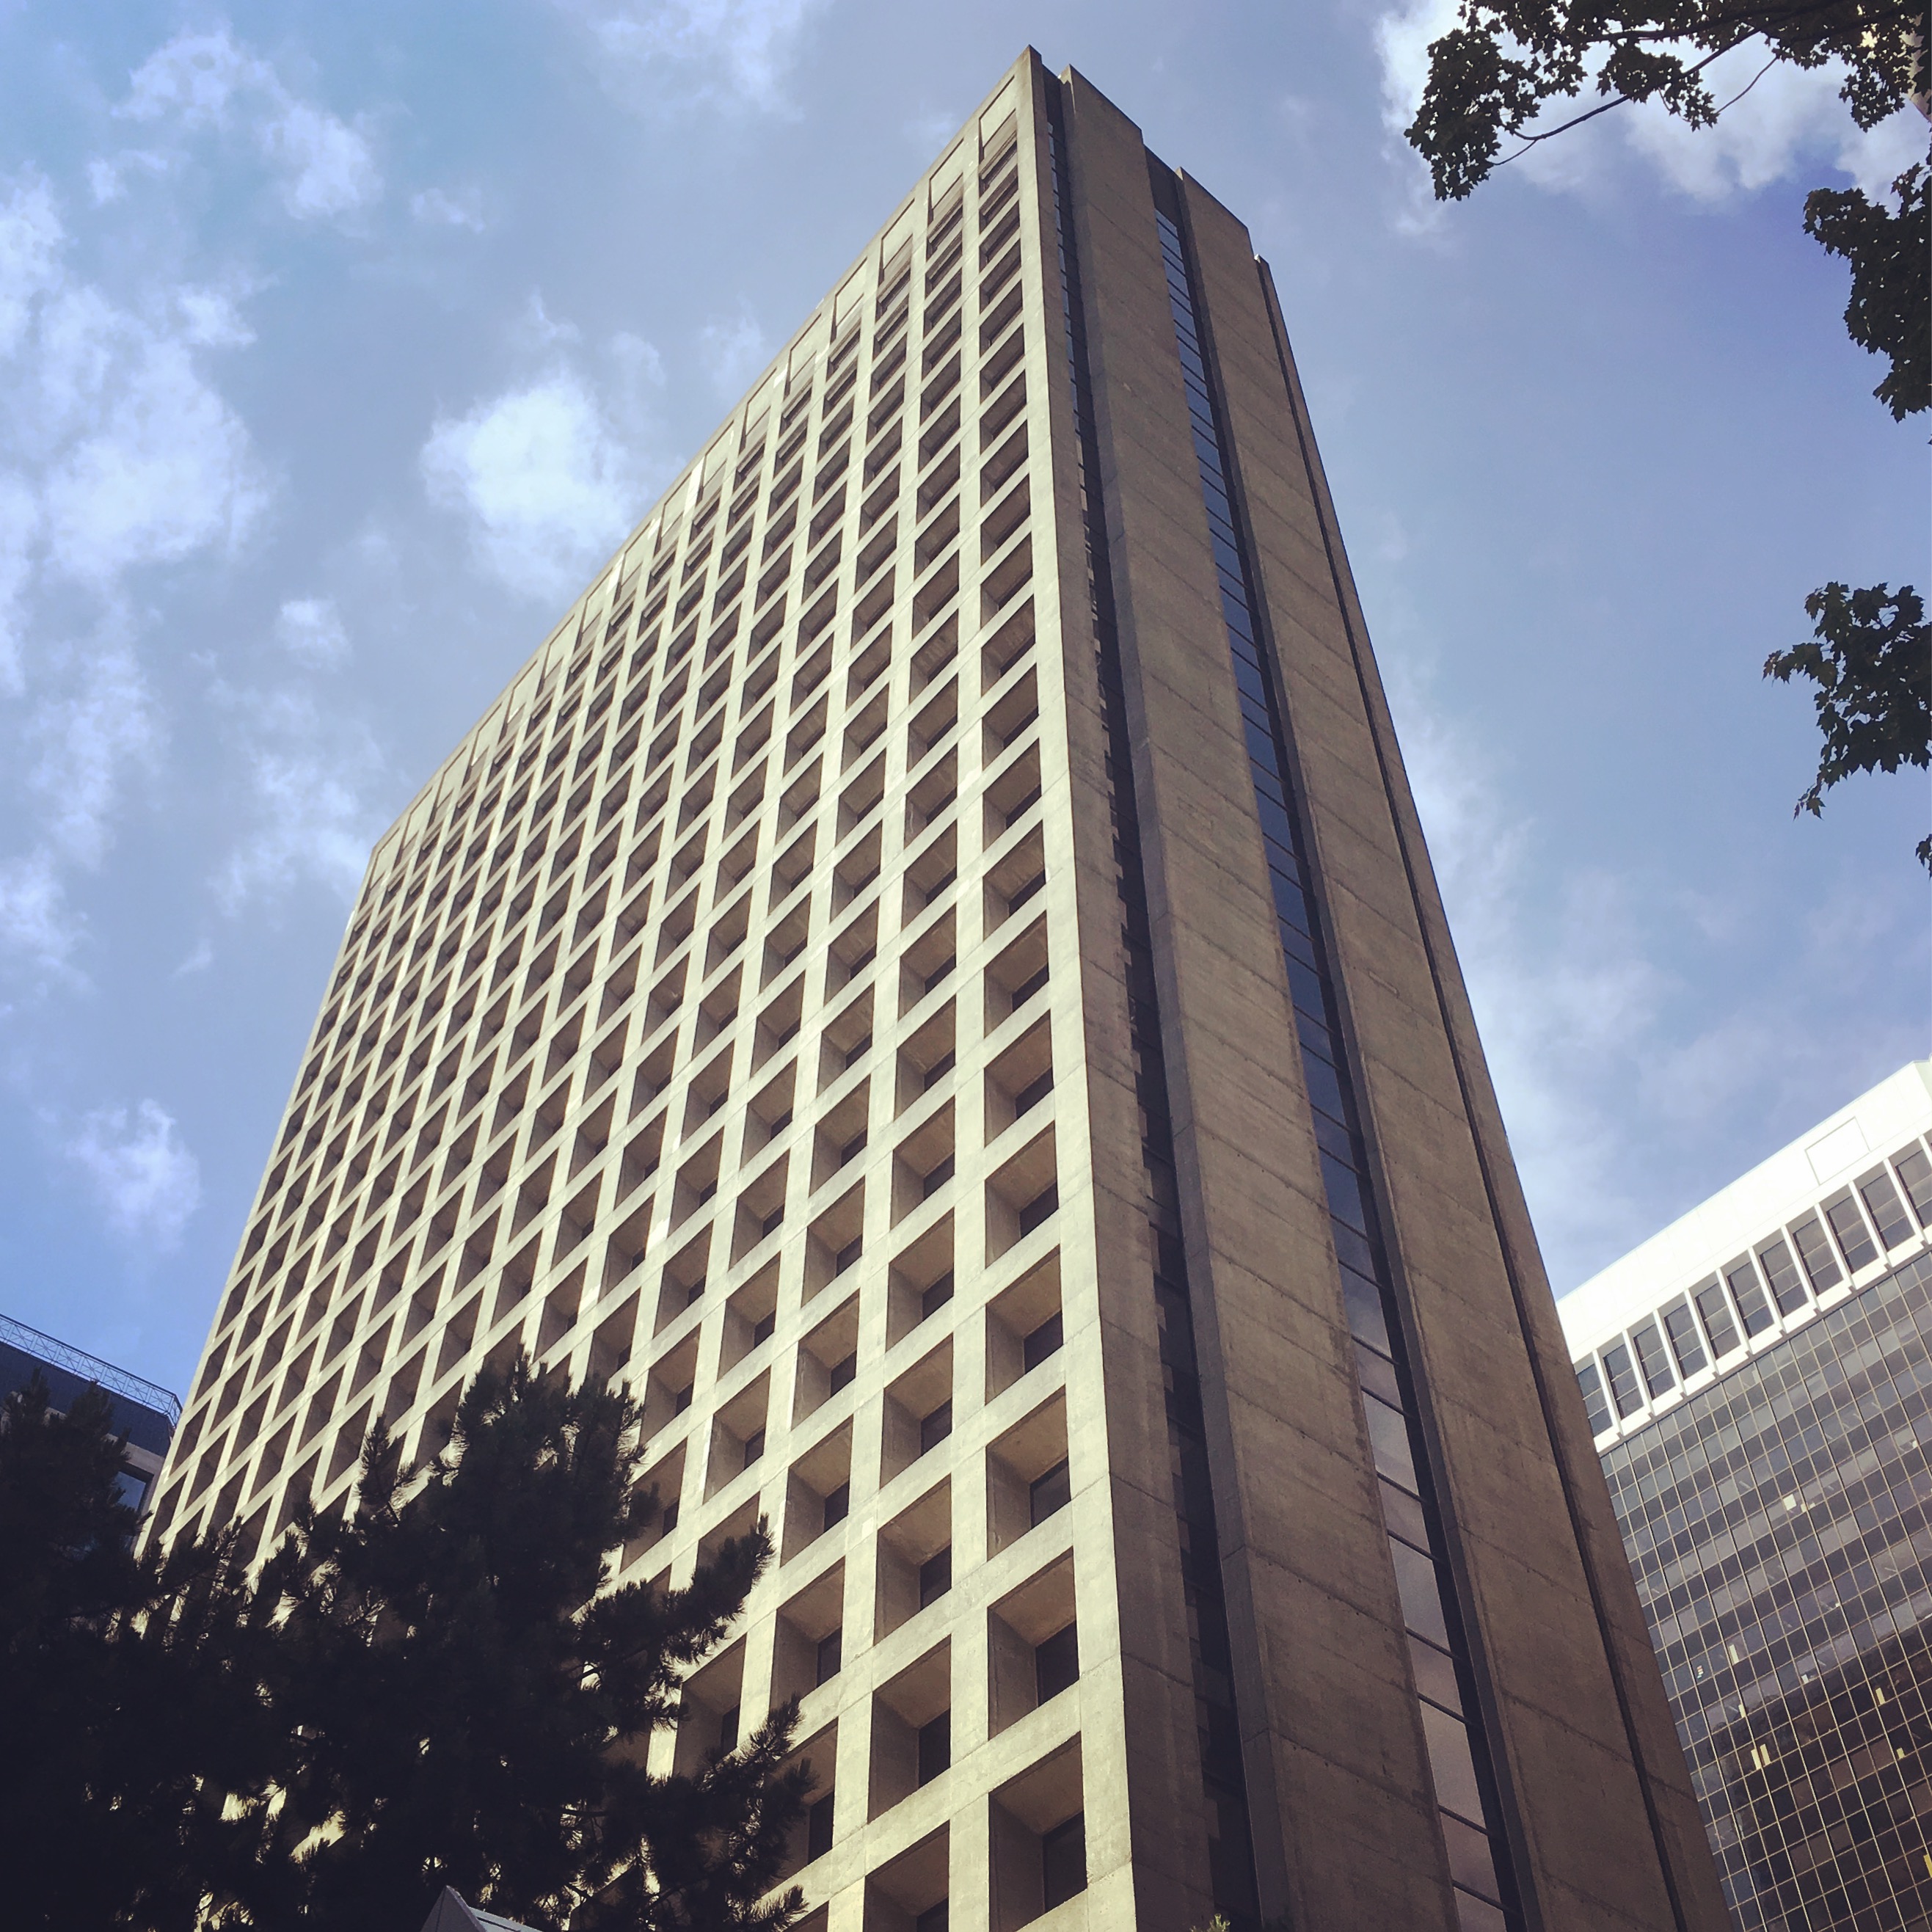 MacMillan Bloedel Building, 1968